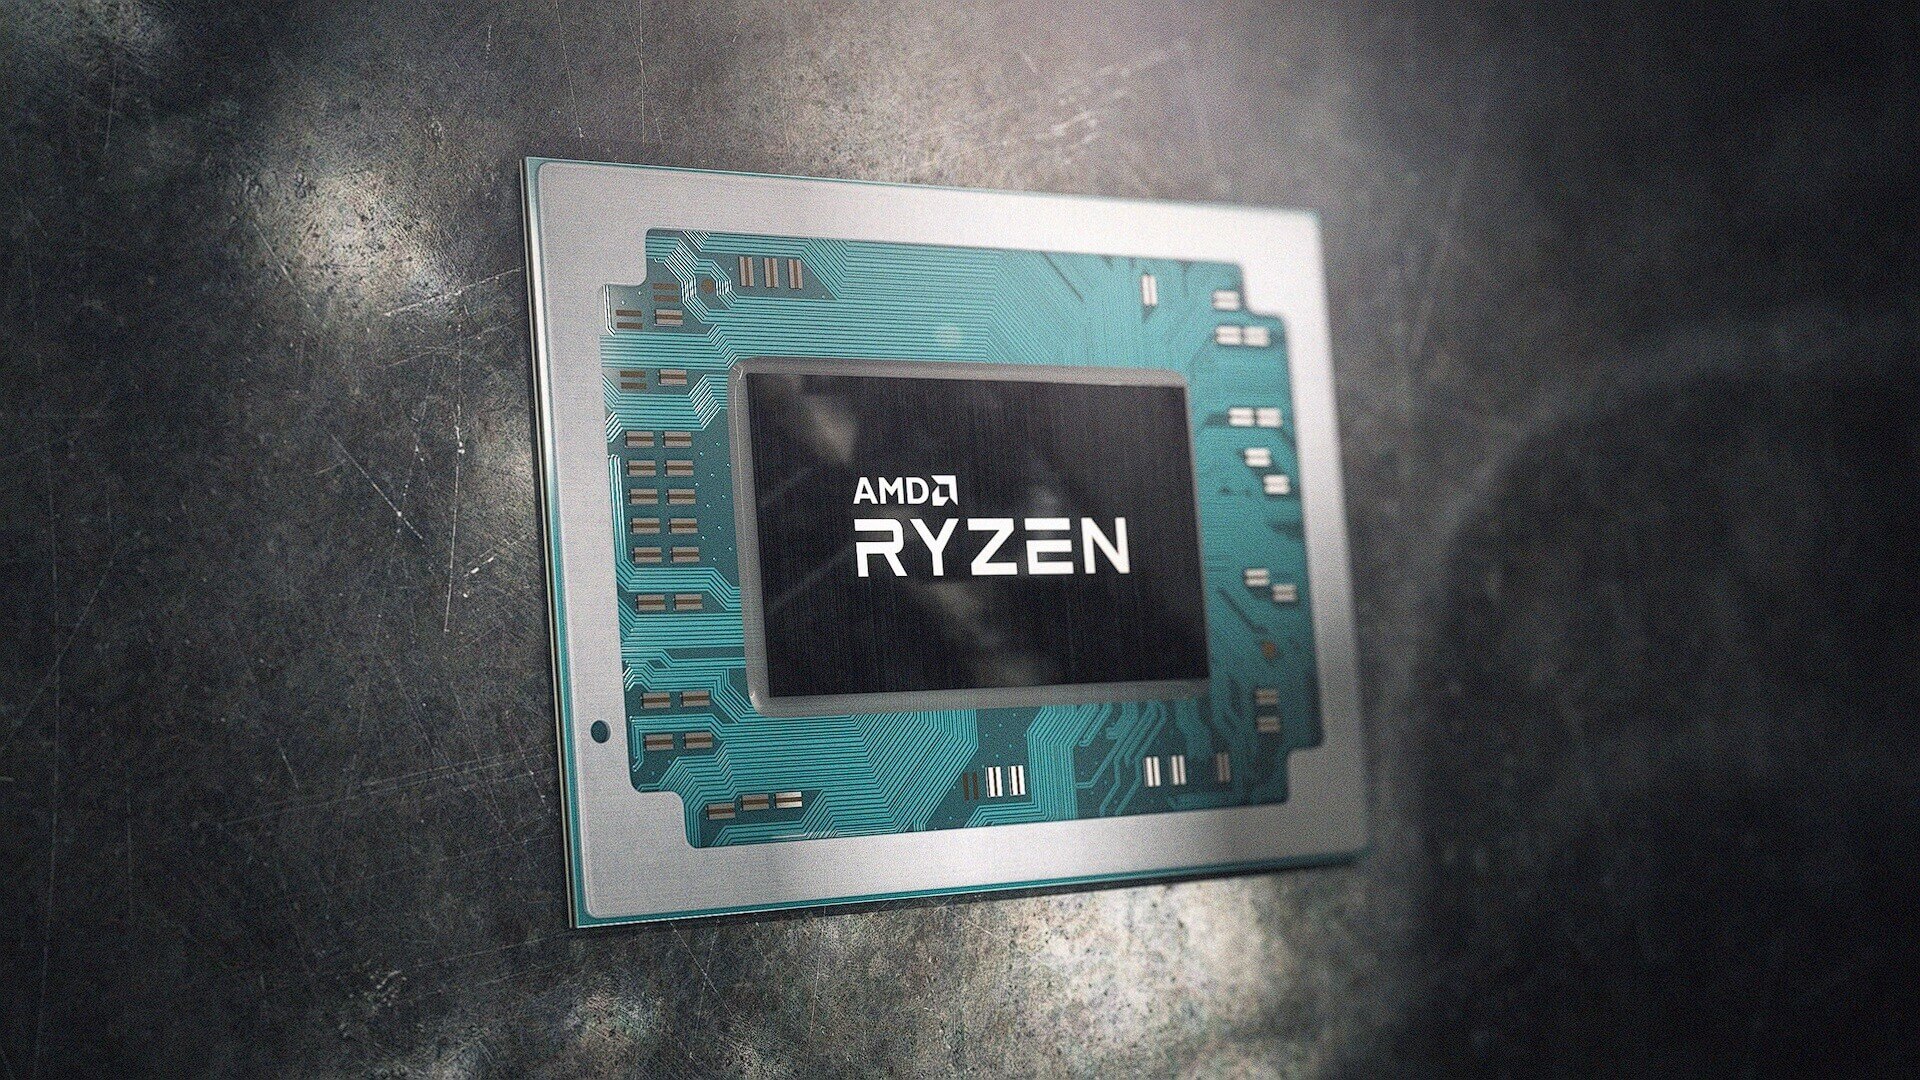 लीक में प्रभावशाली स्पेक्स वाले स्मार्टफोन के लिए AMD "Ryzen C7" SoC को दिखाया गया है